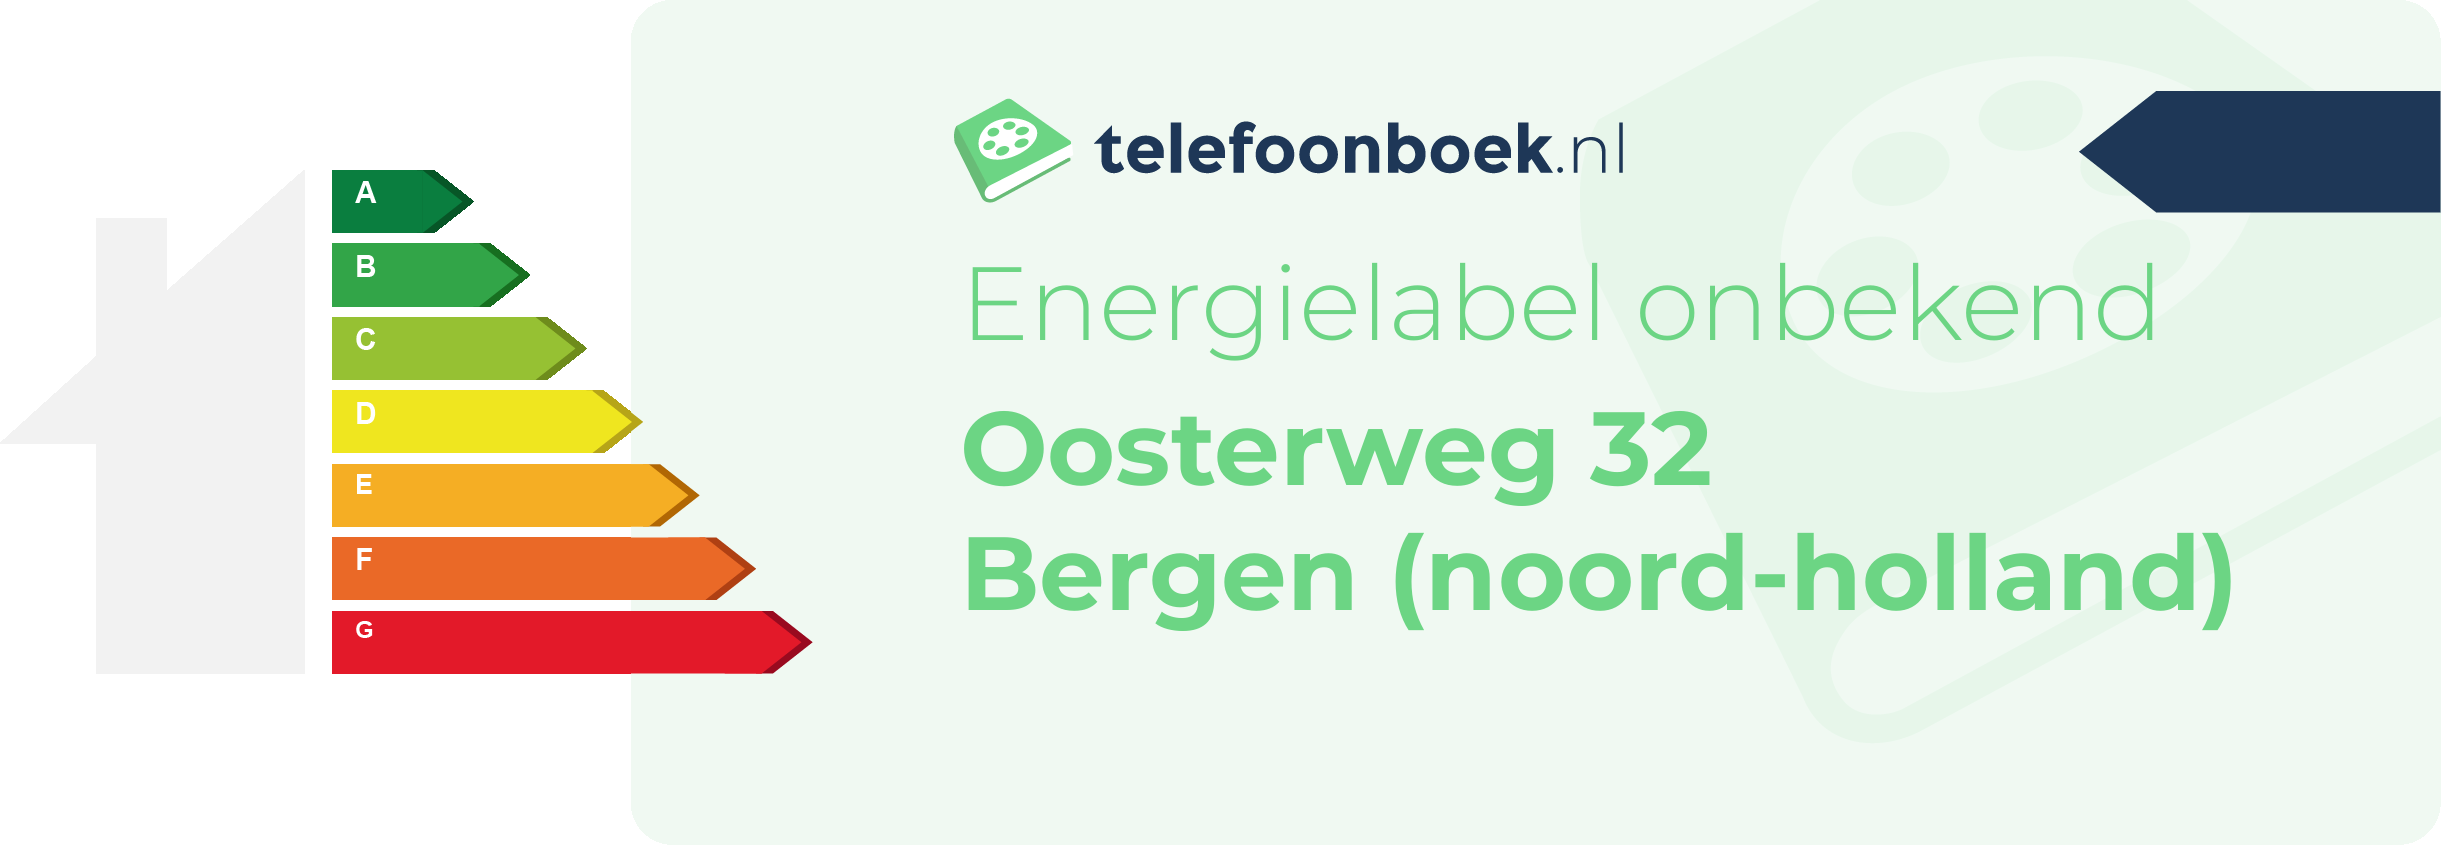 Energielabel Oosterweg 32 Bergen (Noord-Holland)